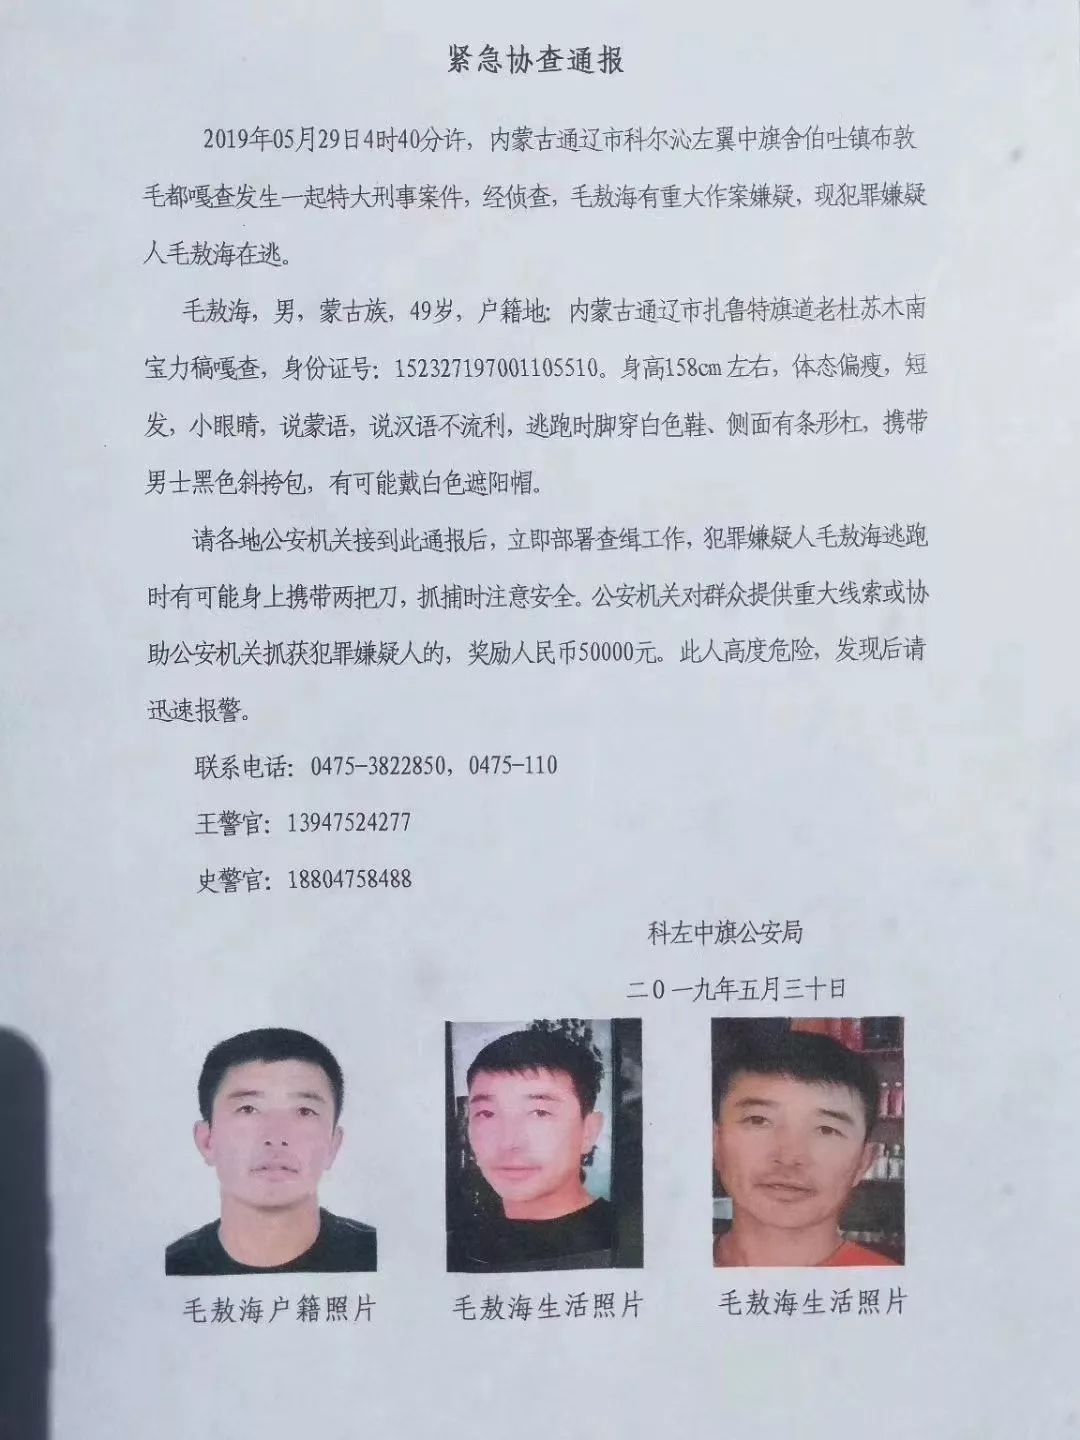 [转载]大案揭秘：1983内蒙古呼伦贝尔616特大杀人强奸案 27人被残杀-蚂蚁公民的专栏 - 博客中国